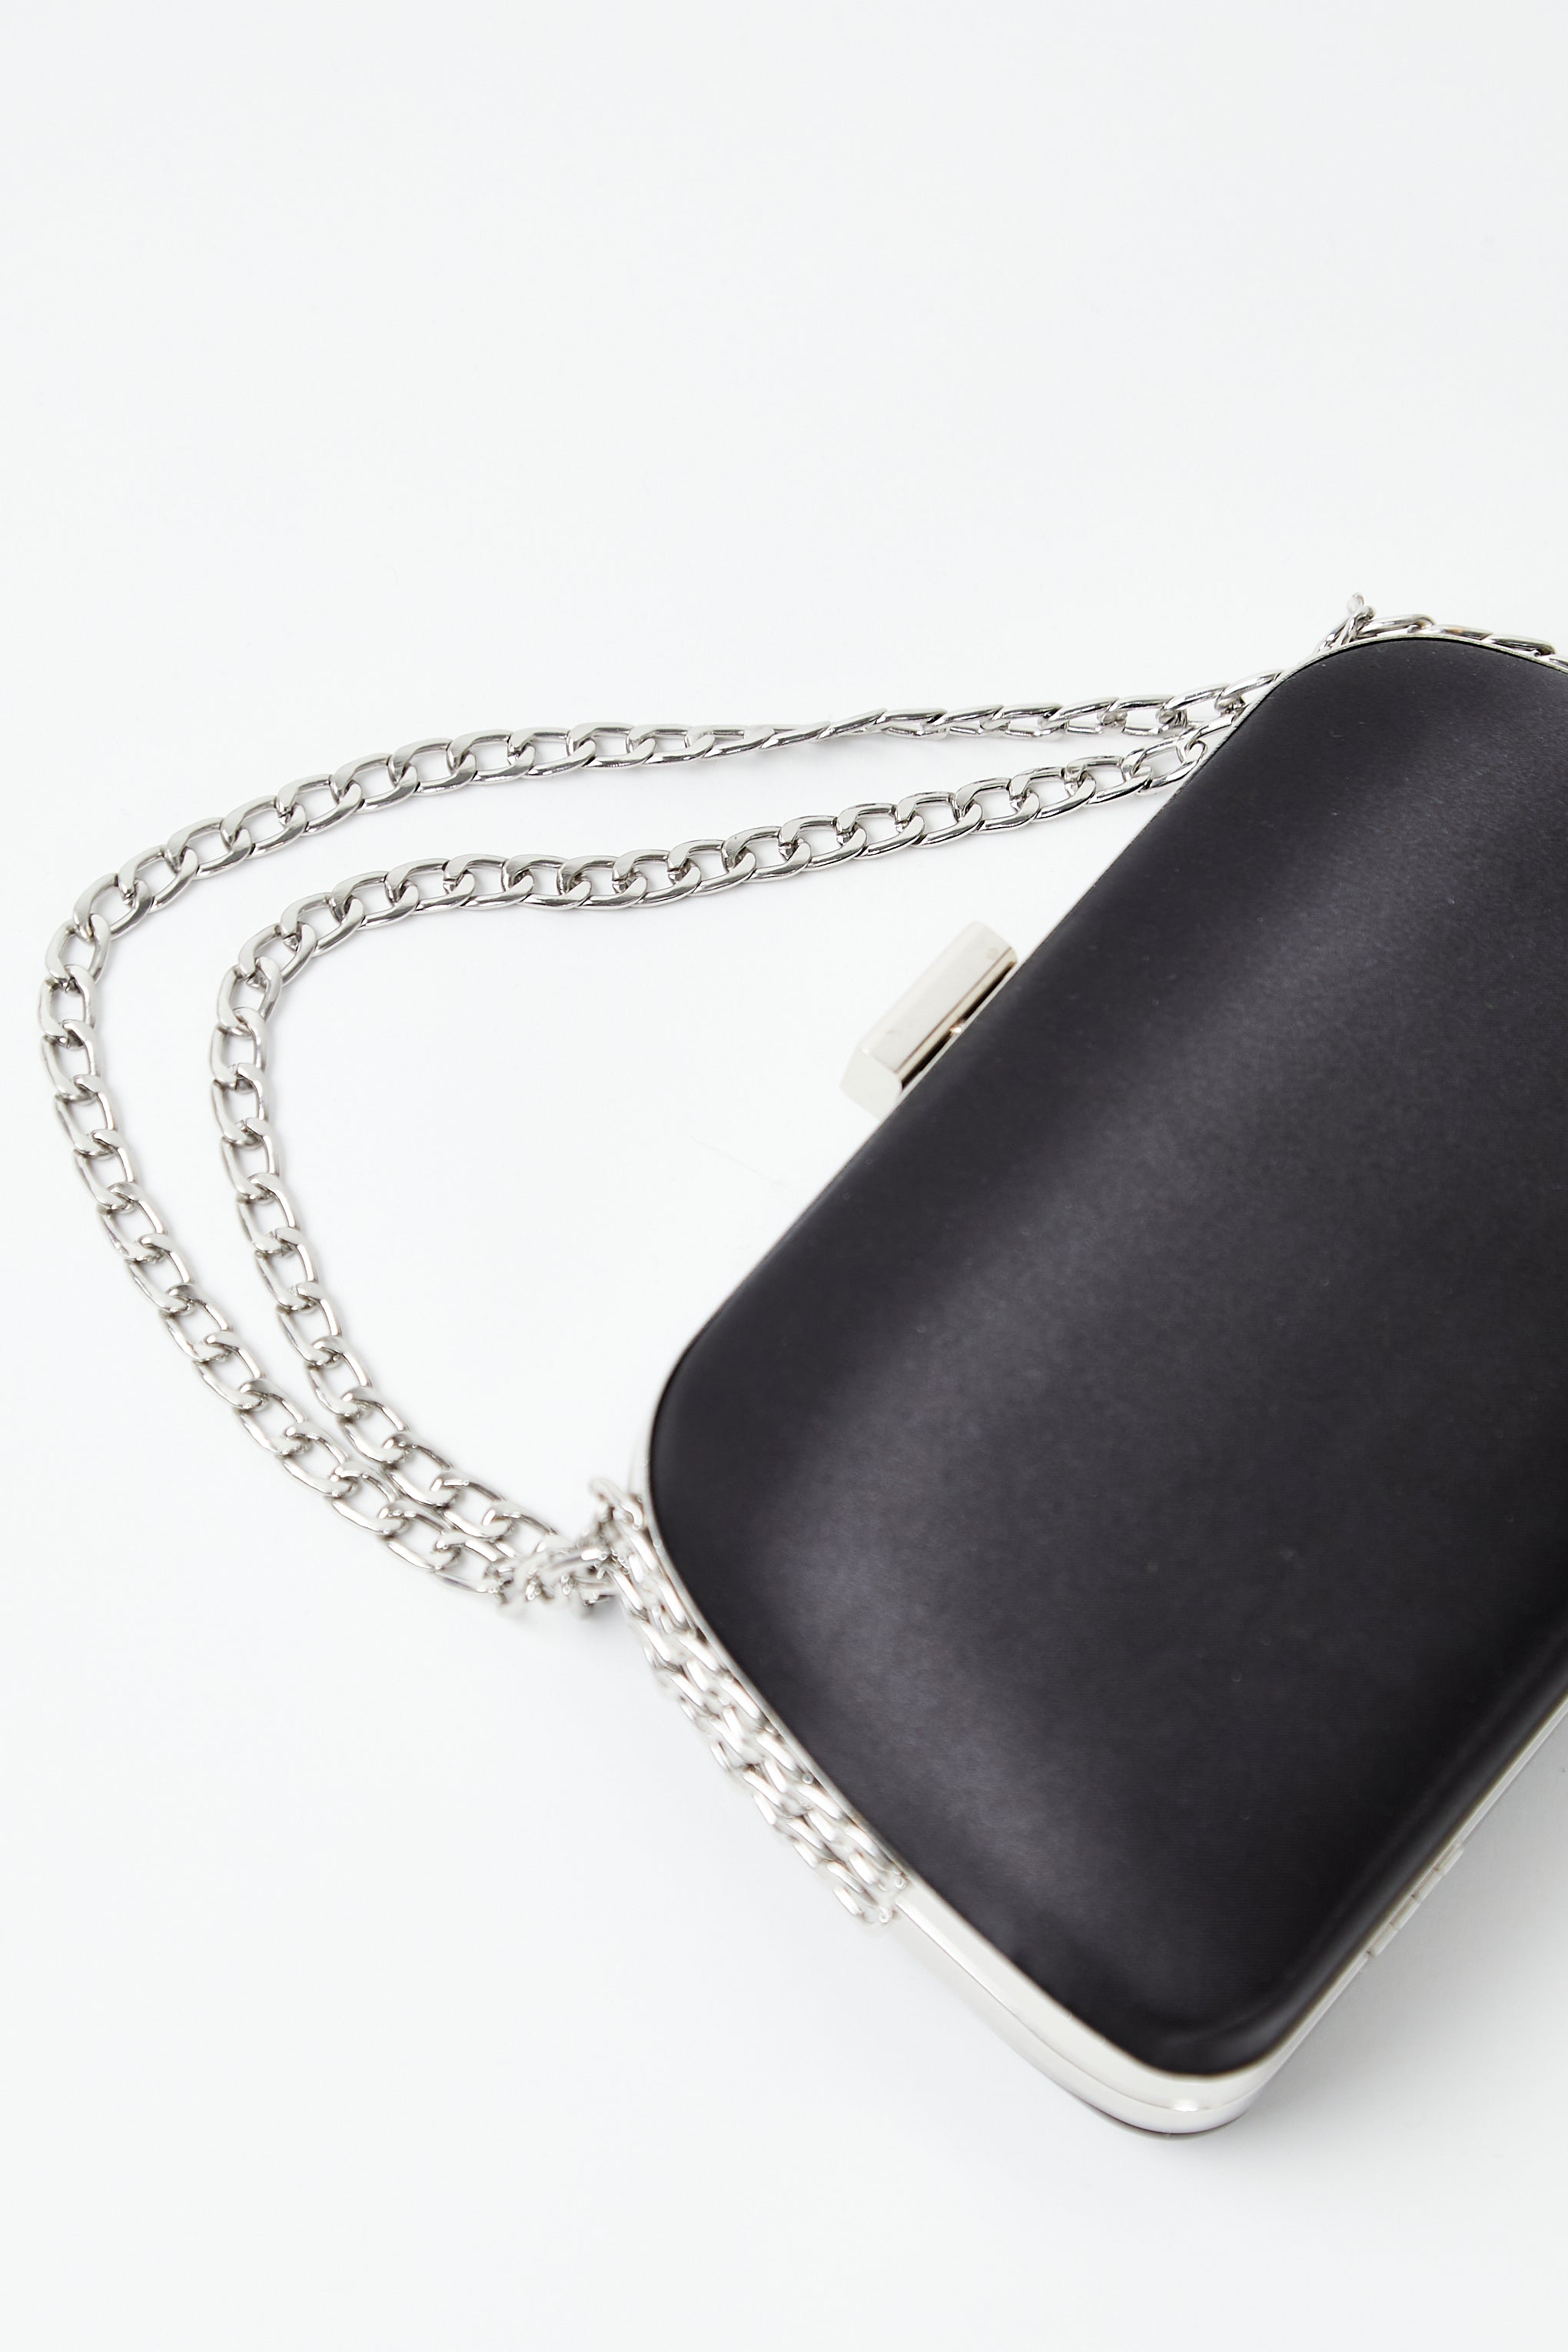 Silver Pearl Rhinestones Evening Clutch Bag Wedding Chain Handbags |  Baginning